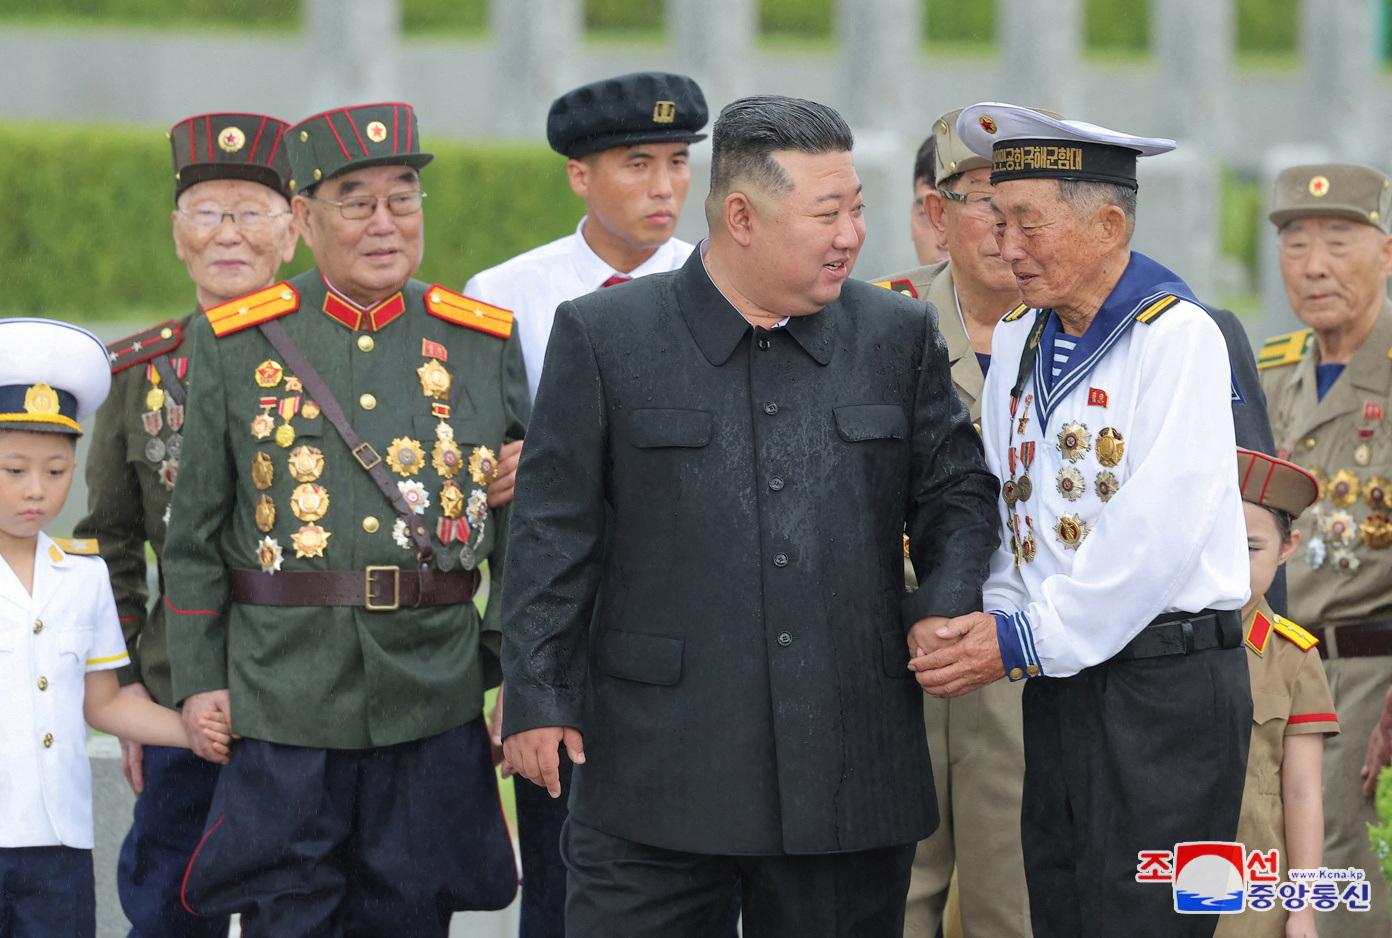 Severná Kórea sľubuje na výročie konca kórejskej vojny úplné zničenie nepriateľa. Obviňuje USA z provokácií